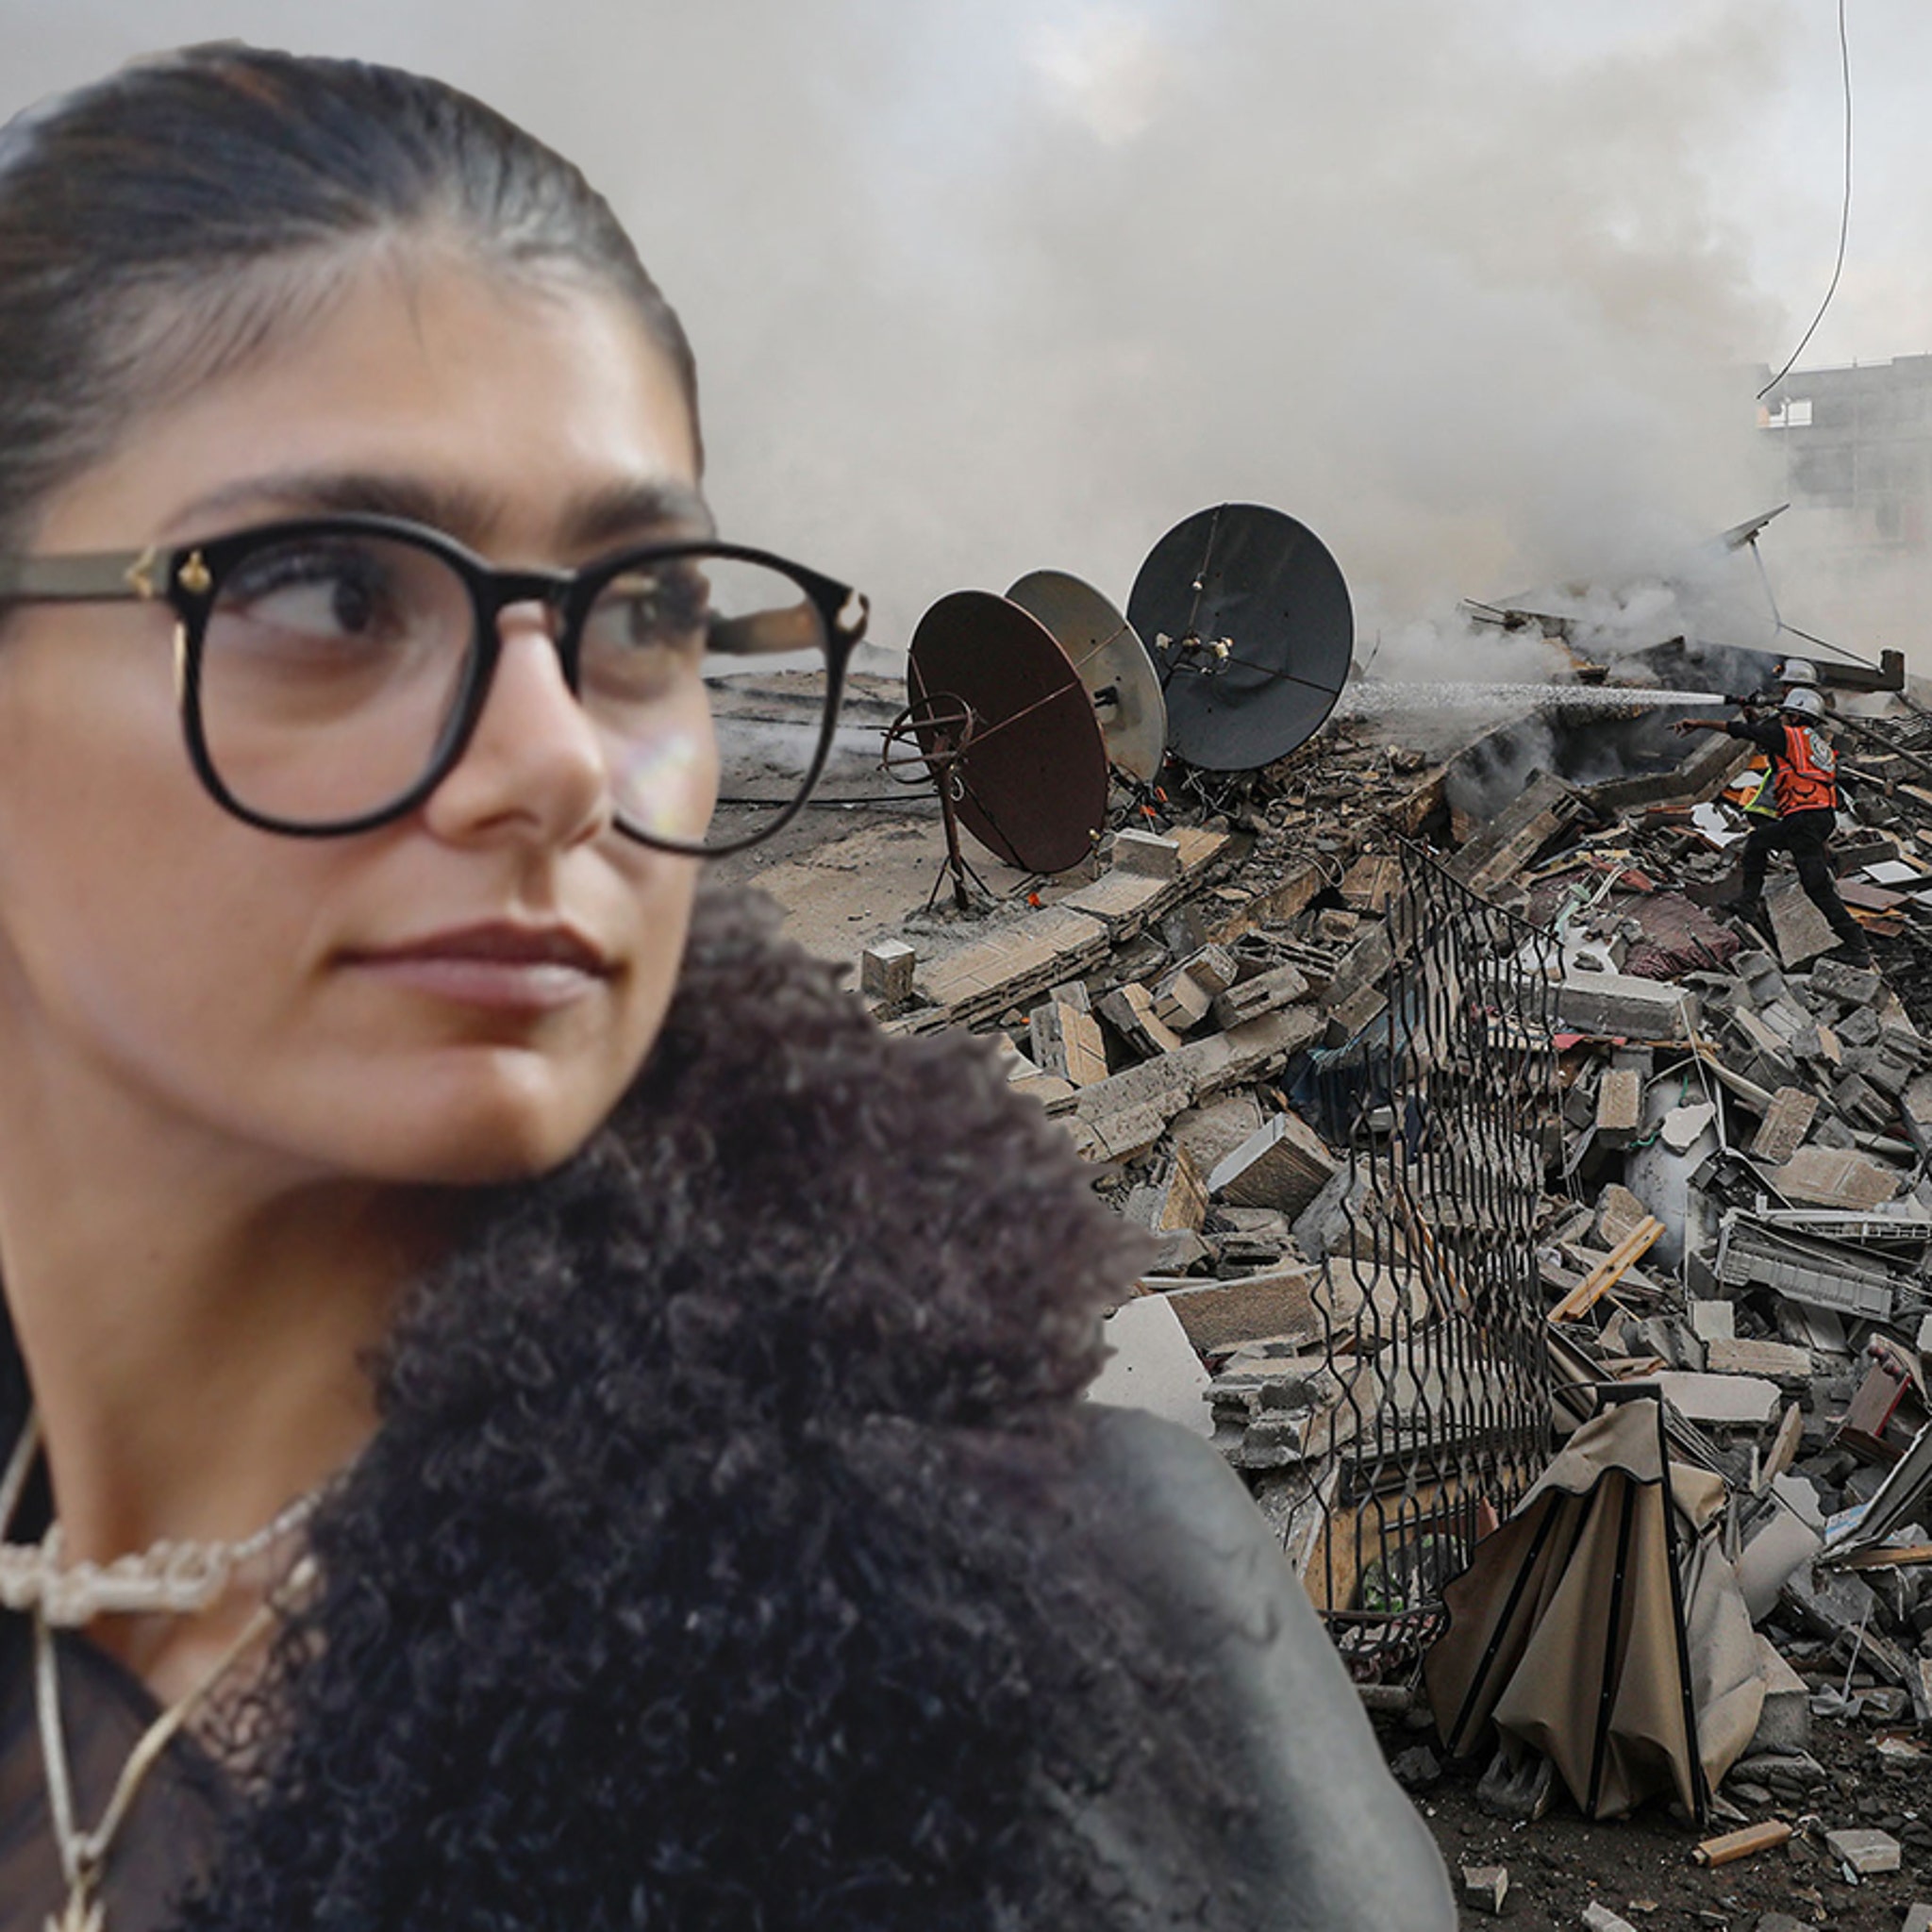 Fullhdporn Mia Khalipa Kis - Mia Khalifa Shares Pro-Hamas Thoughts Amid Israel Attacks, Catches Flak  Online